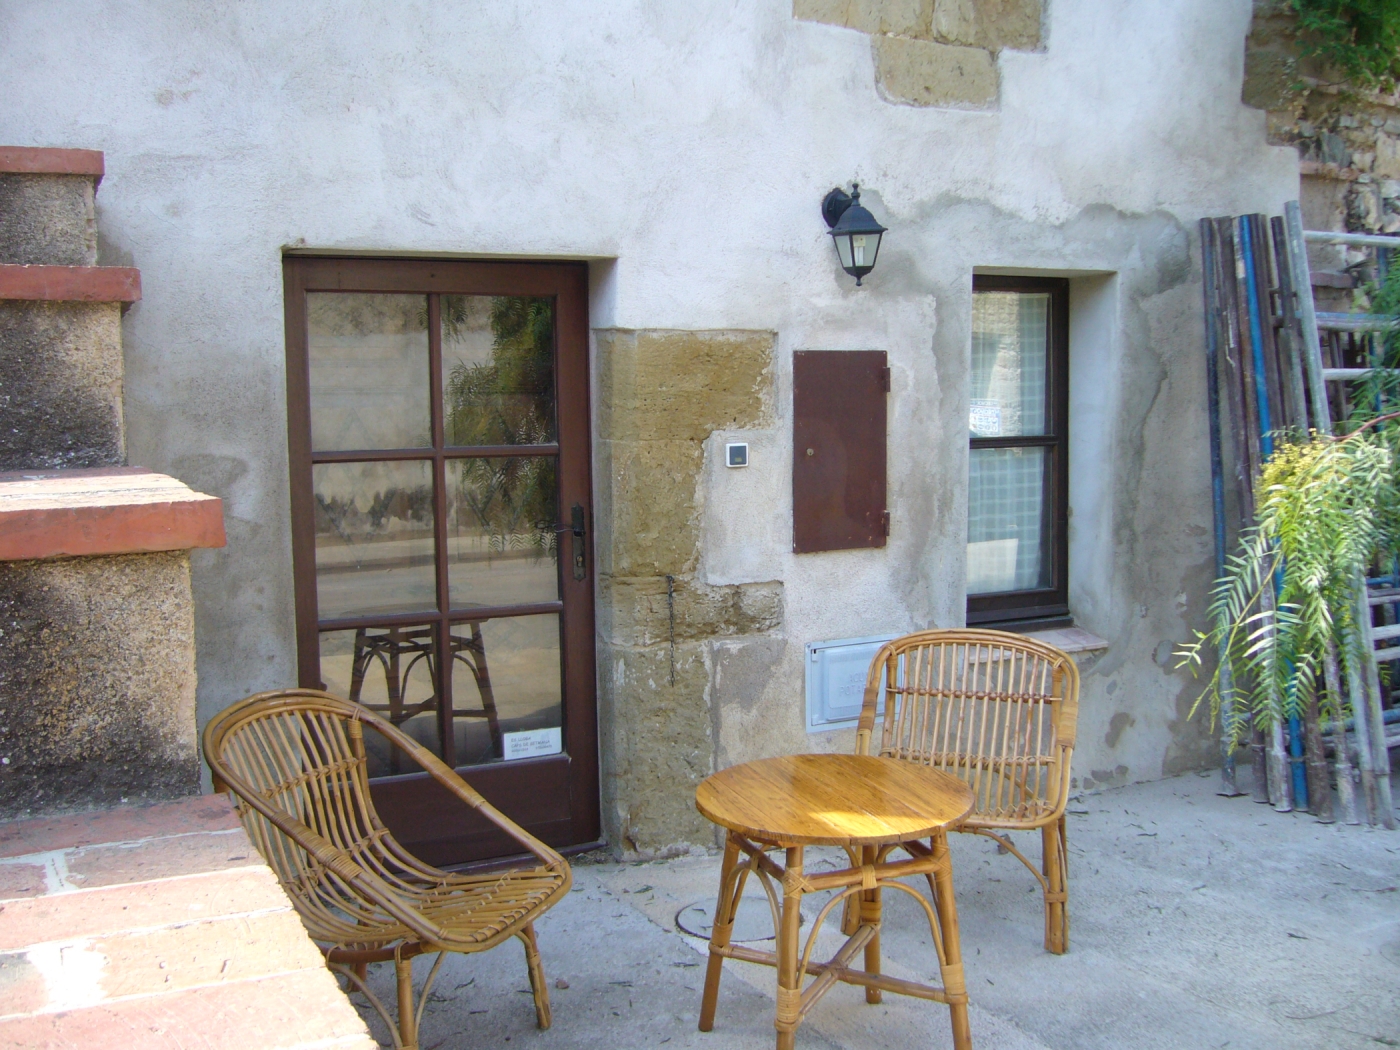 Casa Petita estil rústic de poble medieval prop de les platges a Cruïlles, Monells i Sant Sadurní de l'Heura